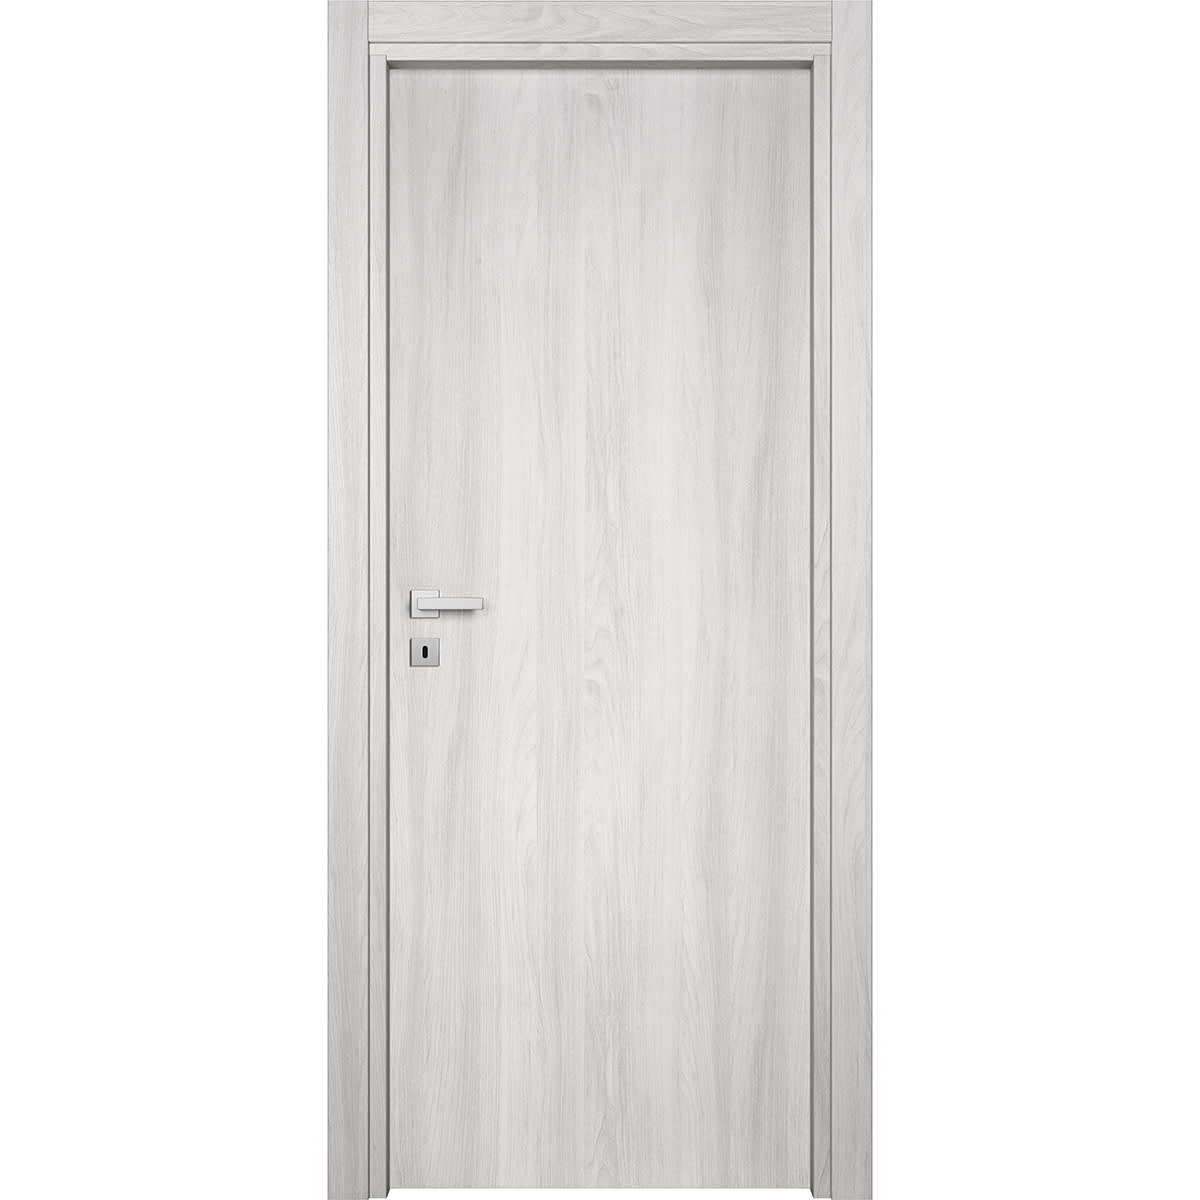 MARBEN DOOR 70X210 REVERSIBLE WHITE ELM